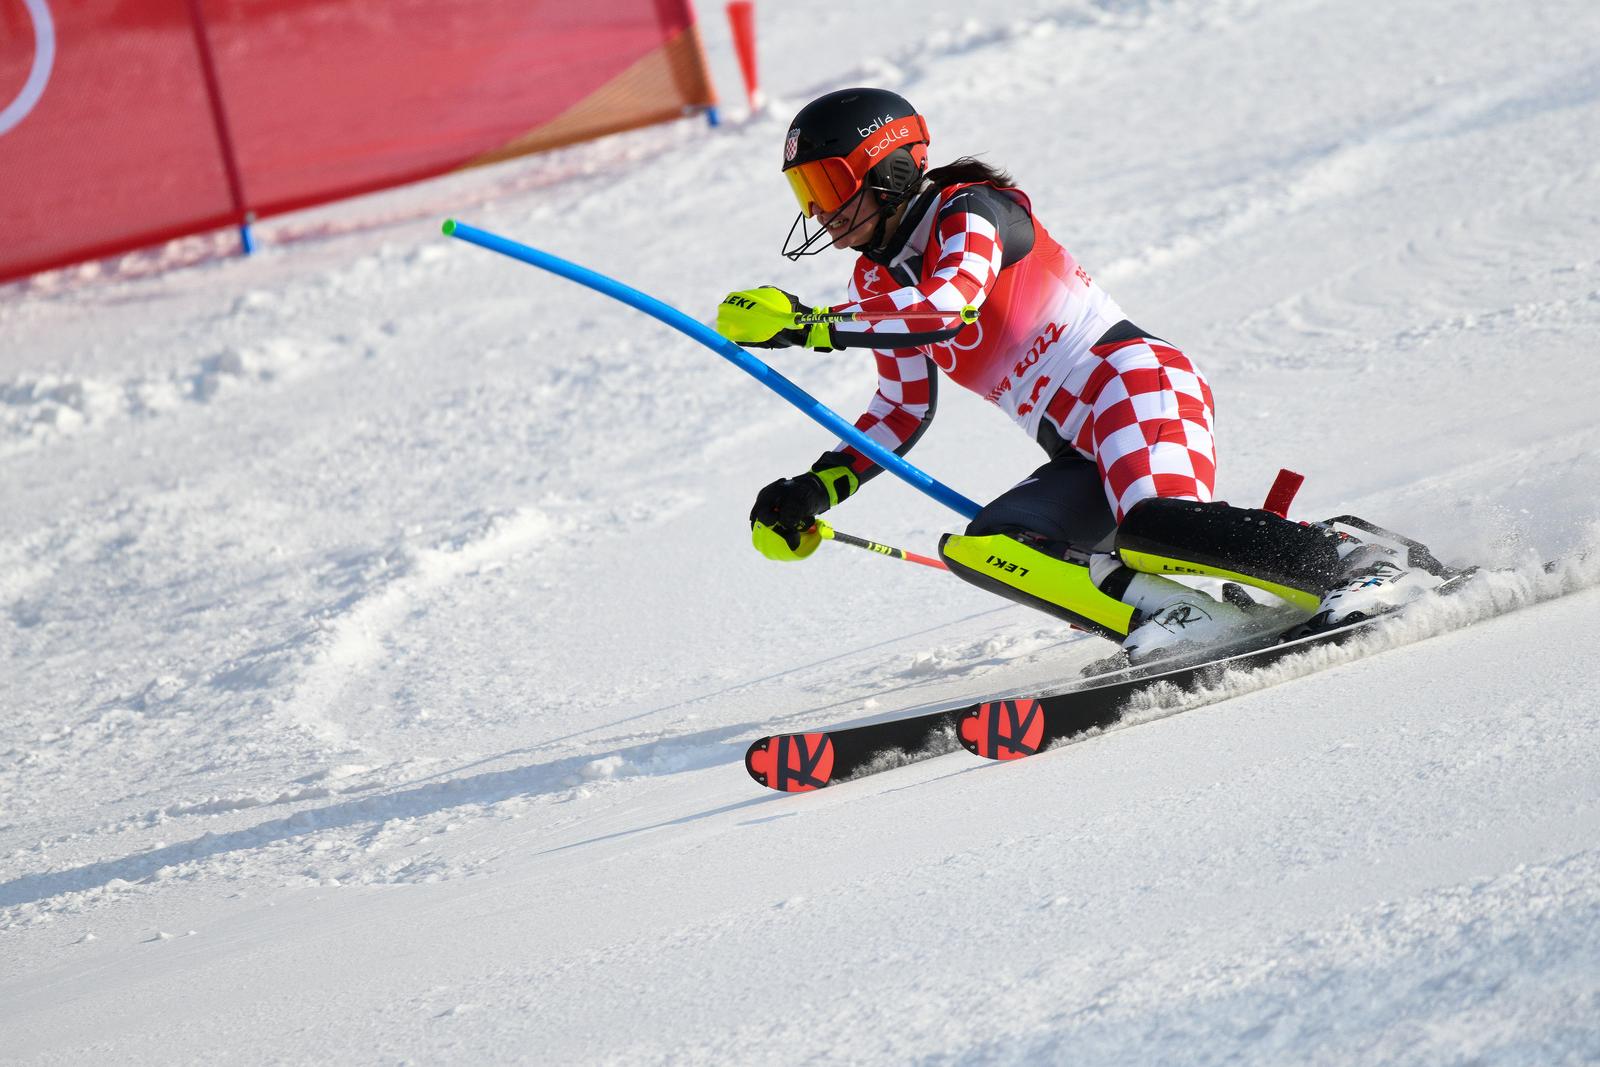 09.02.2022., Peking, Kina - Zimske olimpijske igre 2022. Slalom, prva voznja. Zrinka Ljutic  Photo: Jaki Franja/PIXSELL